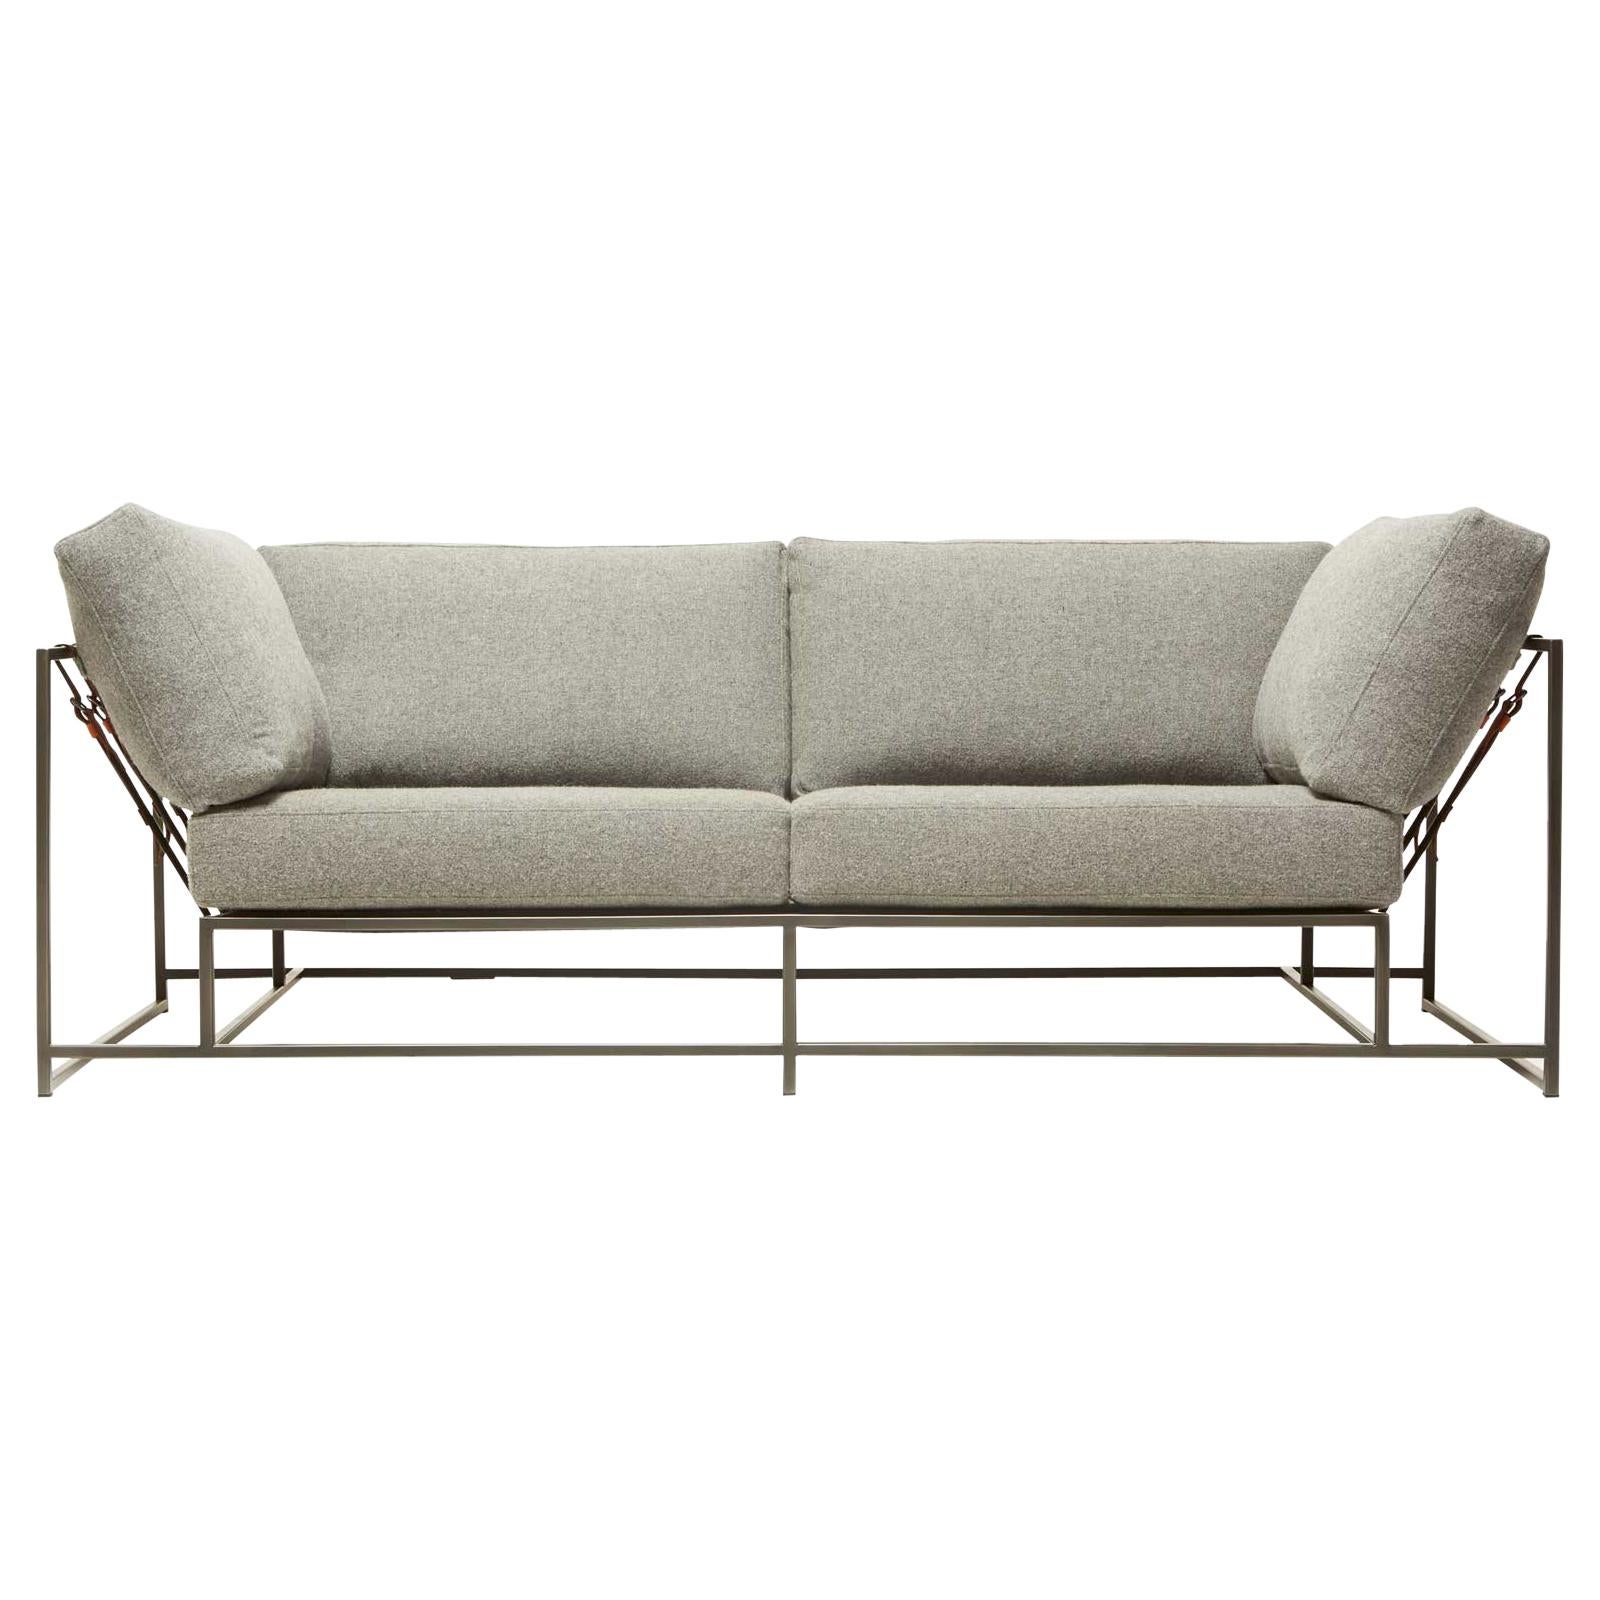 Zweisitziges Sofa aus grauer Wolle und geschwärztem Stahl